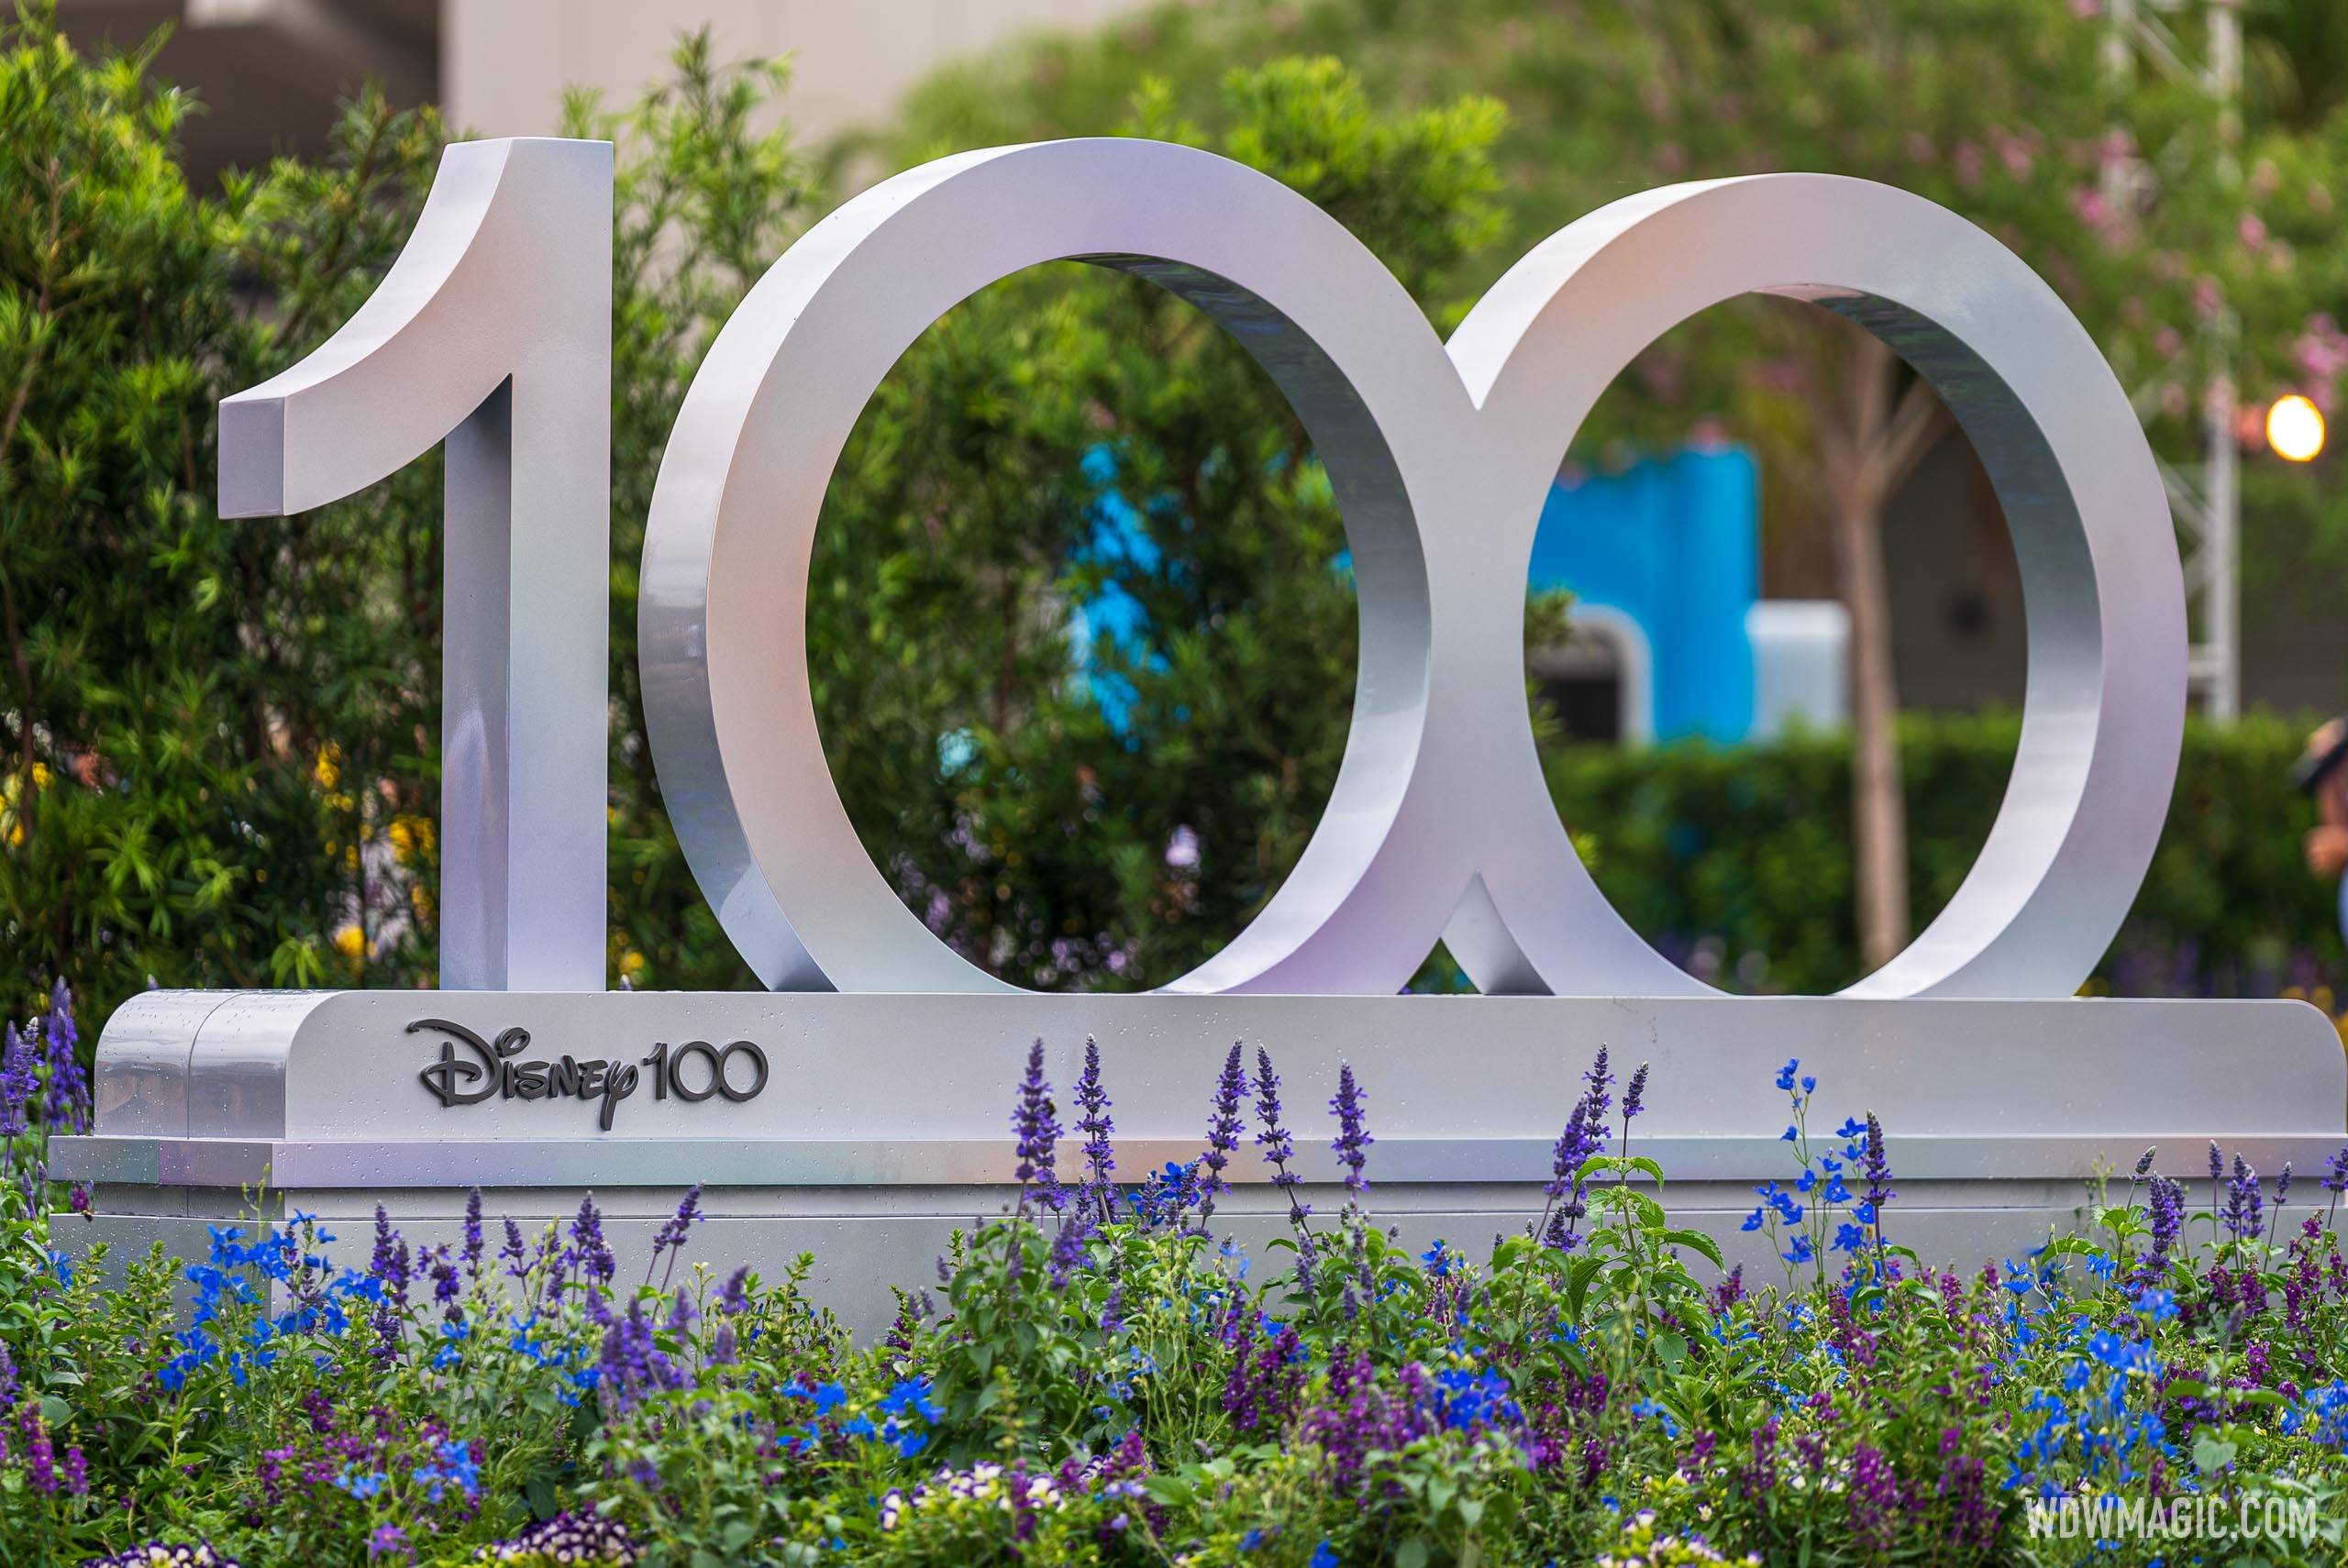 Disney100 display at EPCOT